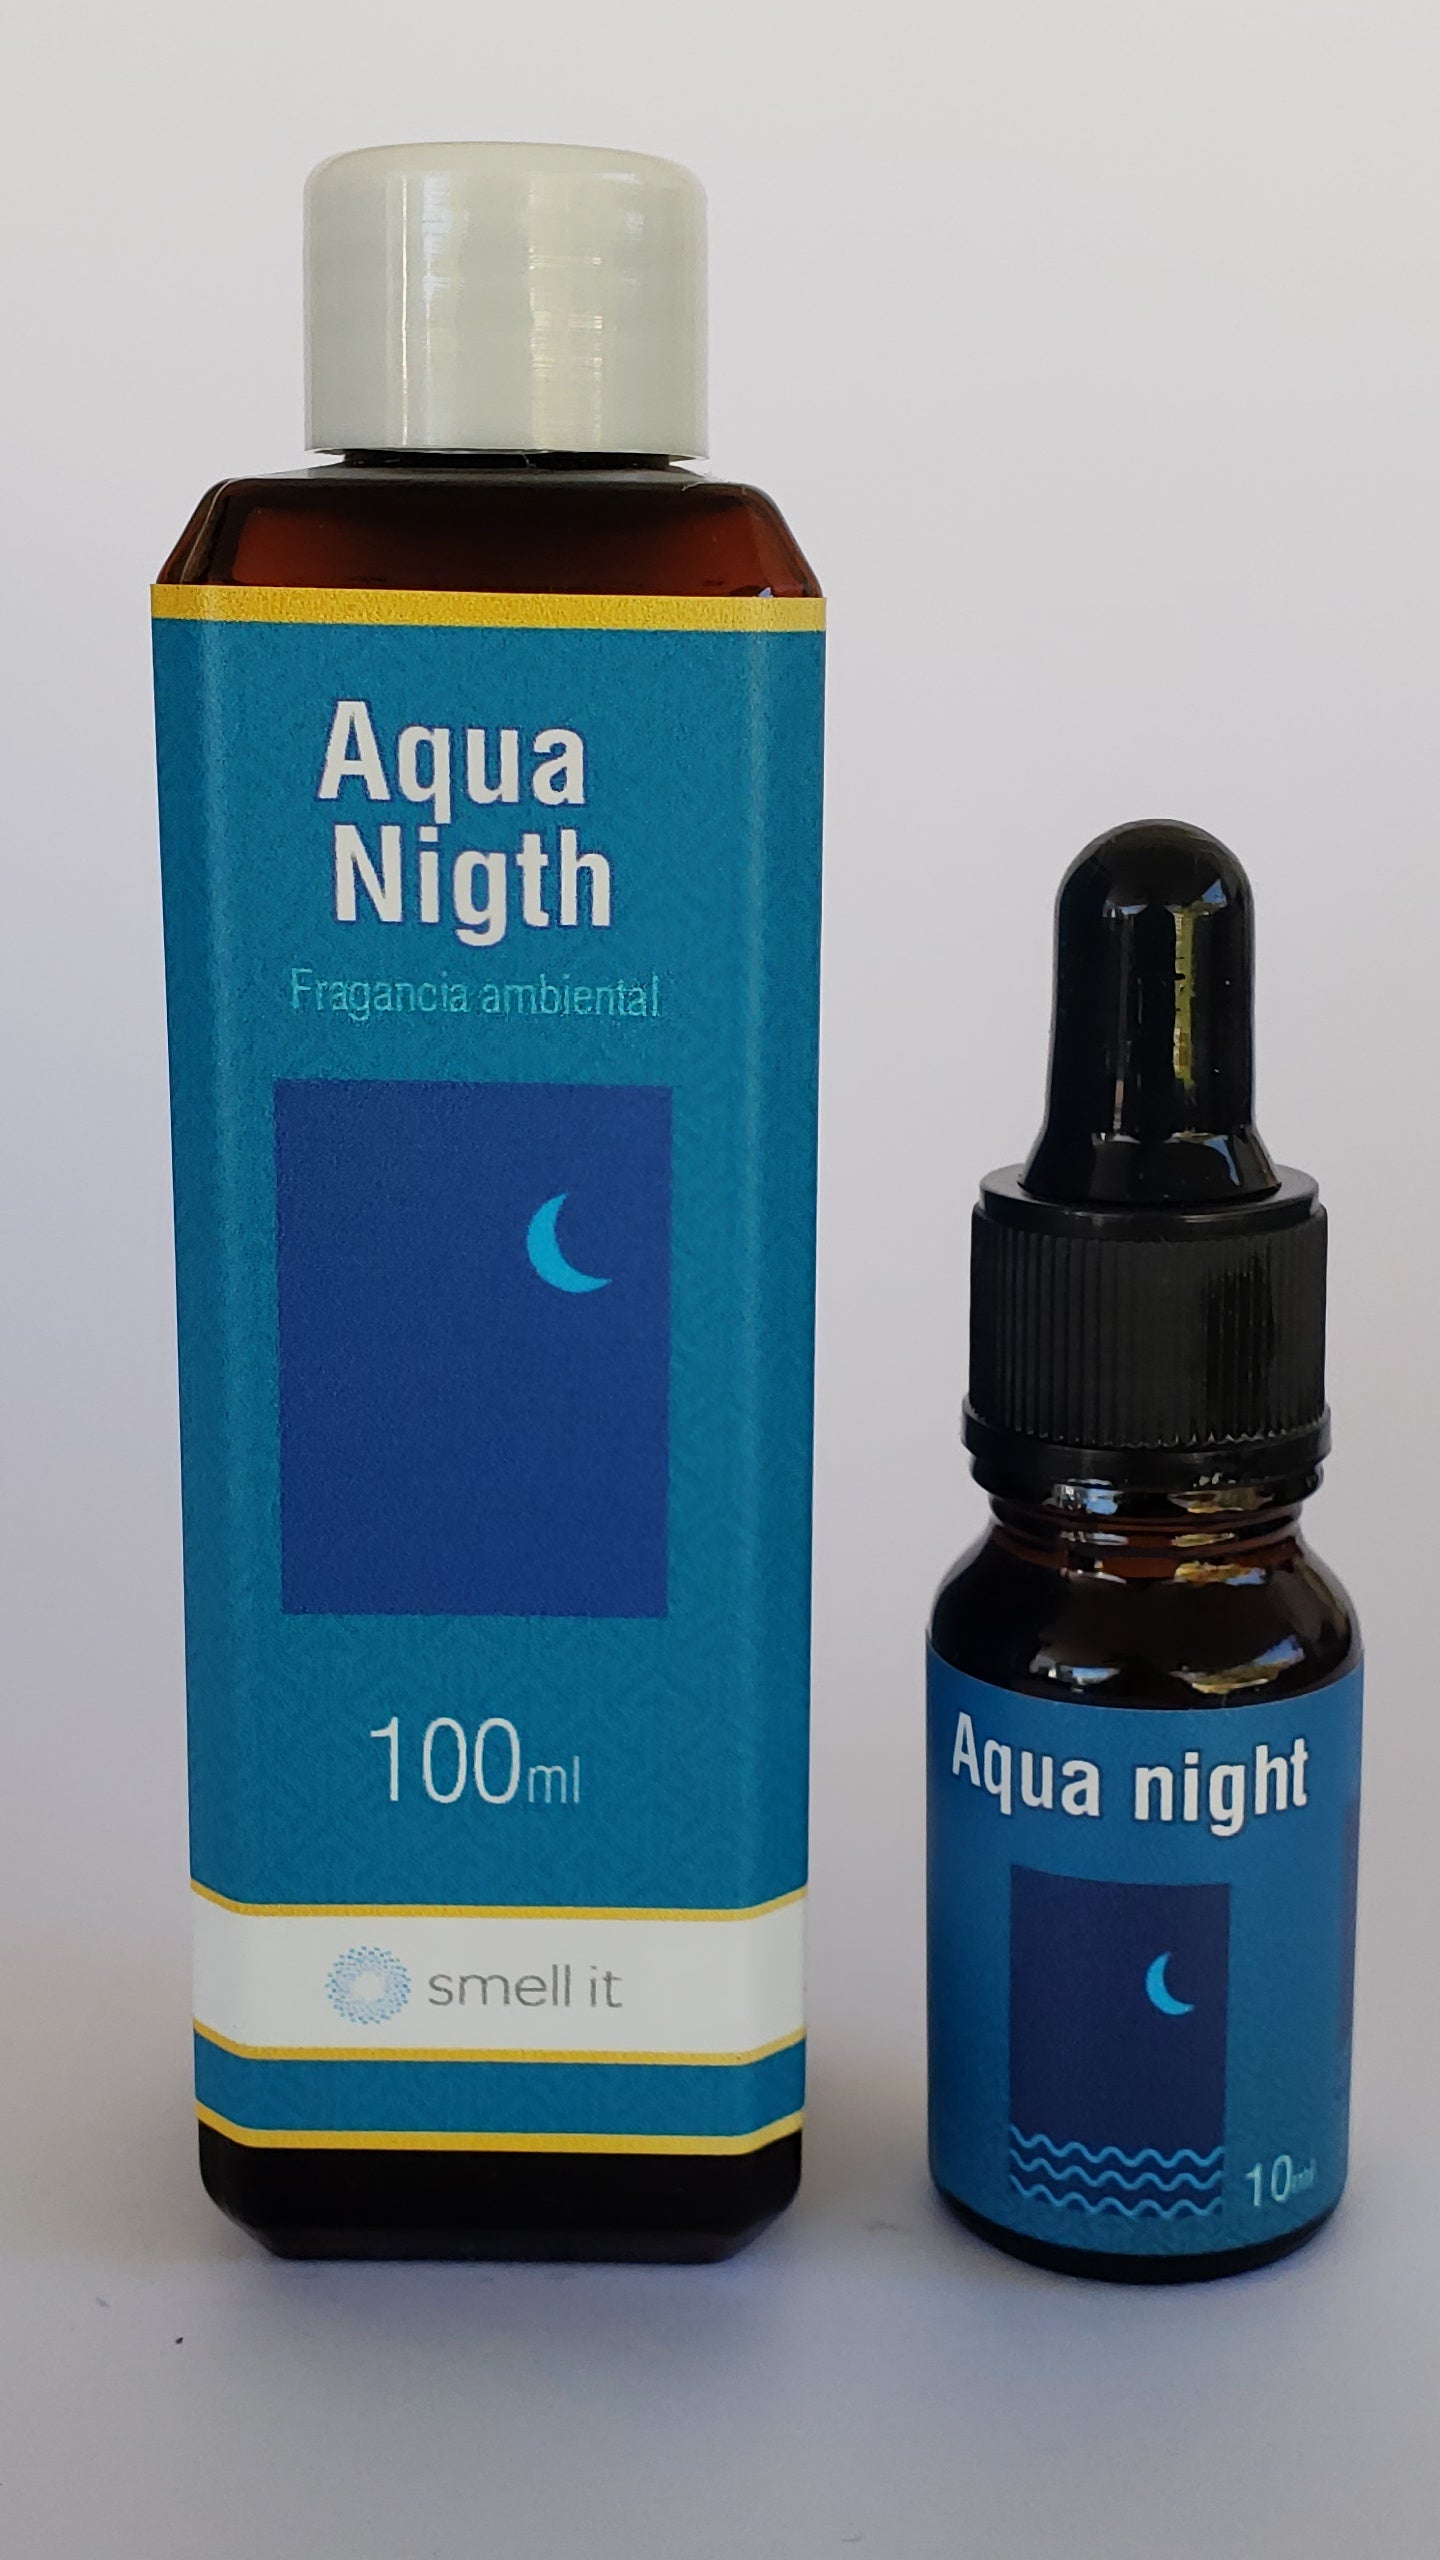 Fragancia Ambiental - Aqua Nigth